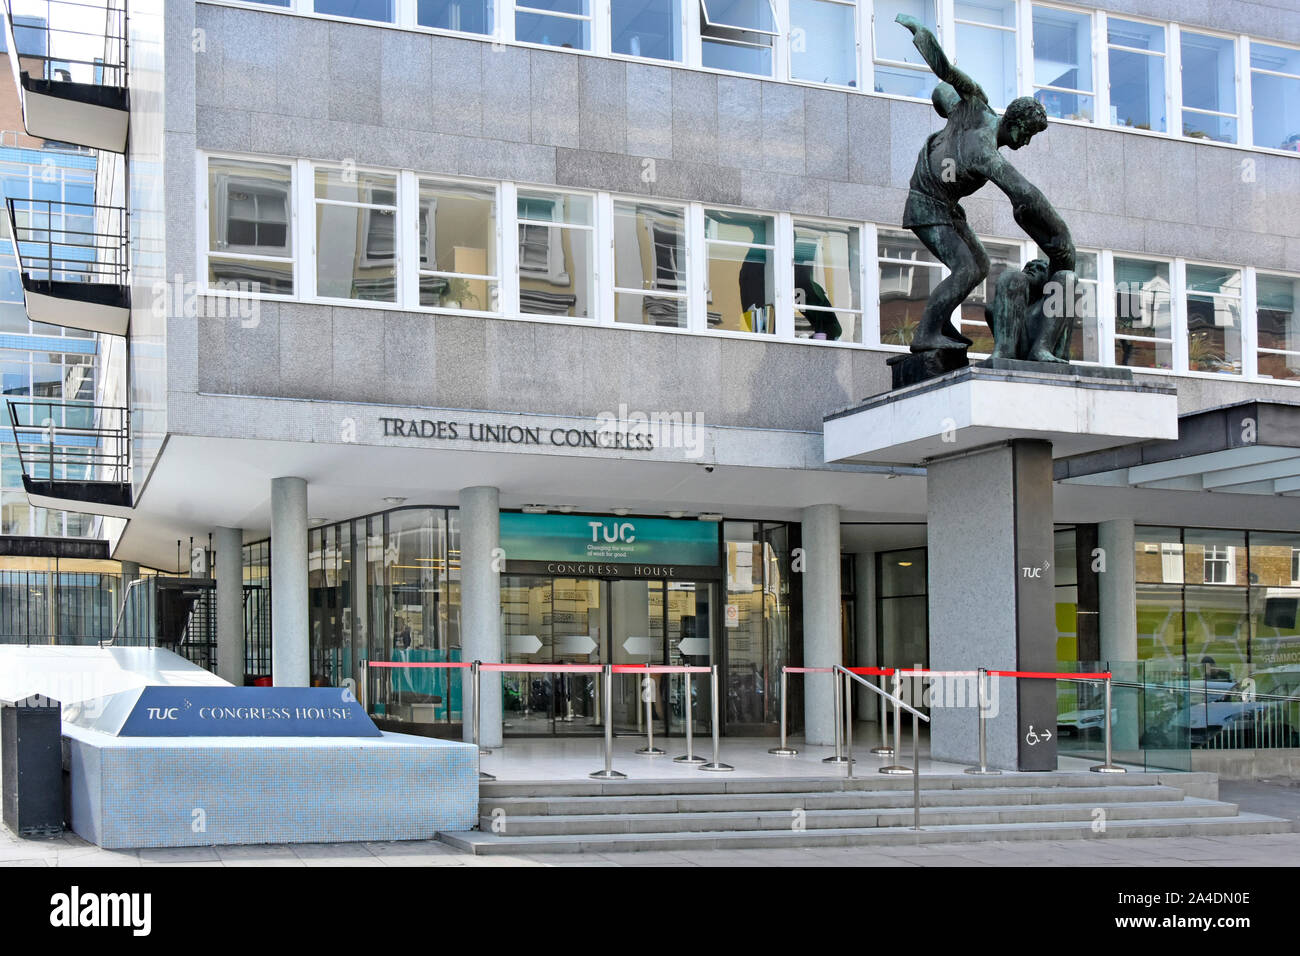 Le Congrès du TUC House Entrée immeuble de bureaux au siège de Trades Union Congress dominé par une statue en bronze par Bernard Meadows London England UK Banque D'Images